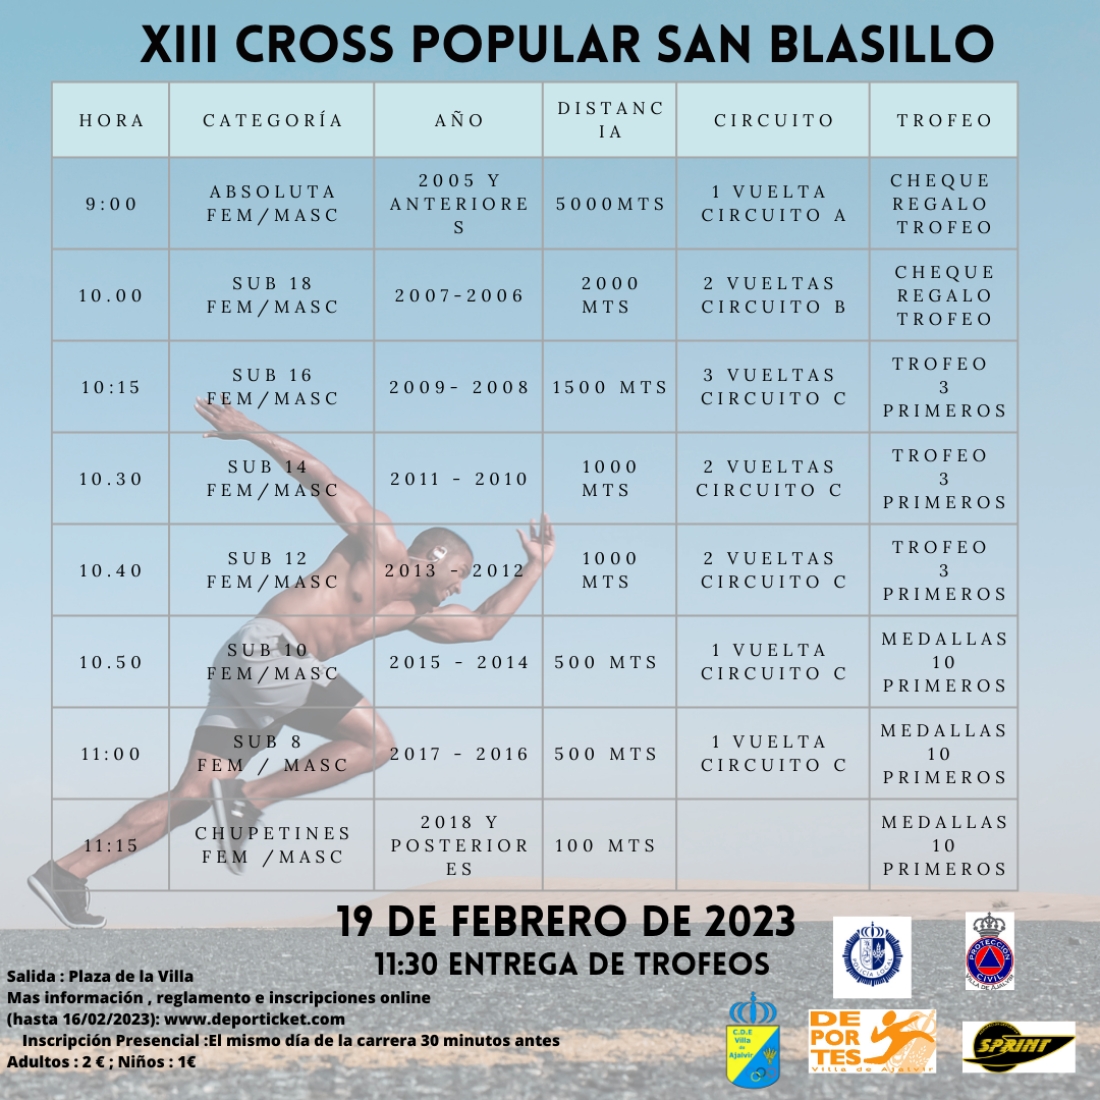 XIII CROSS POPULAR SAN BLASILLO